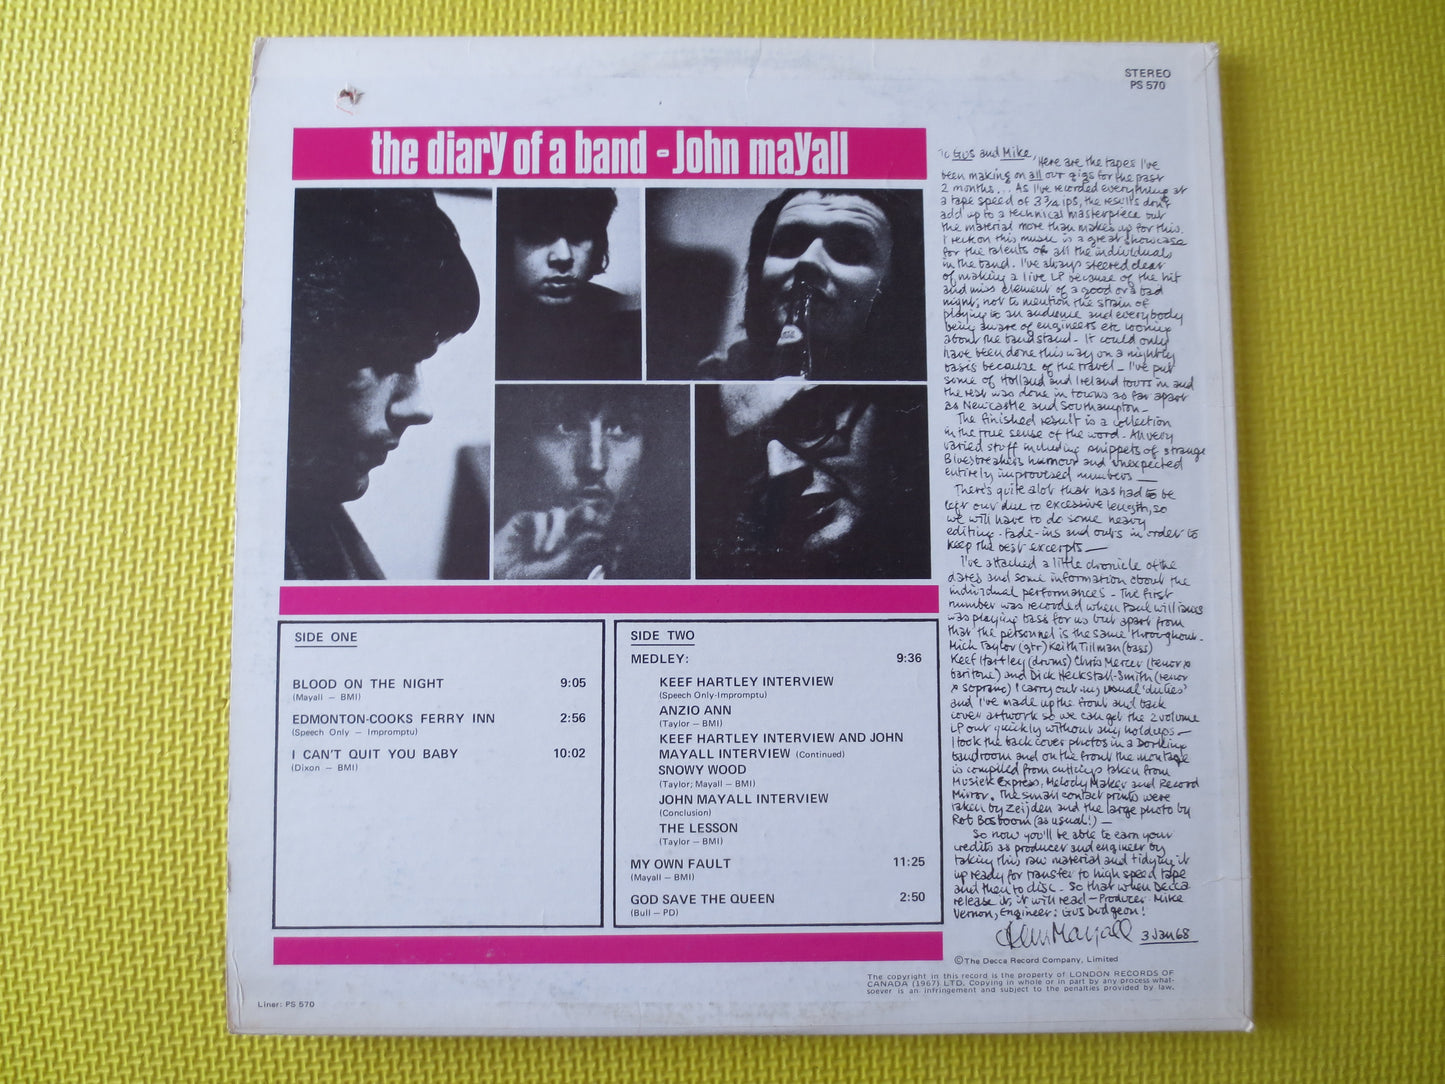 JOHN MAYALL, The Diary of a Band, John Mayall Records, John Mayall Albums, John Mayall lps, Vinyl Record, lps, 1968 Records